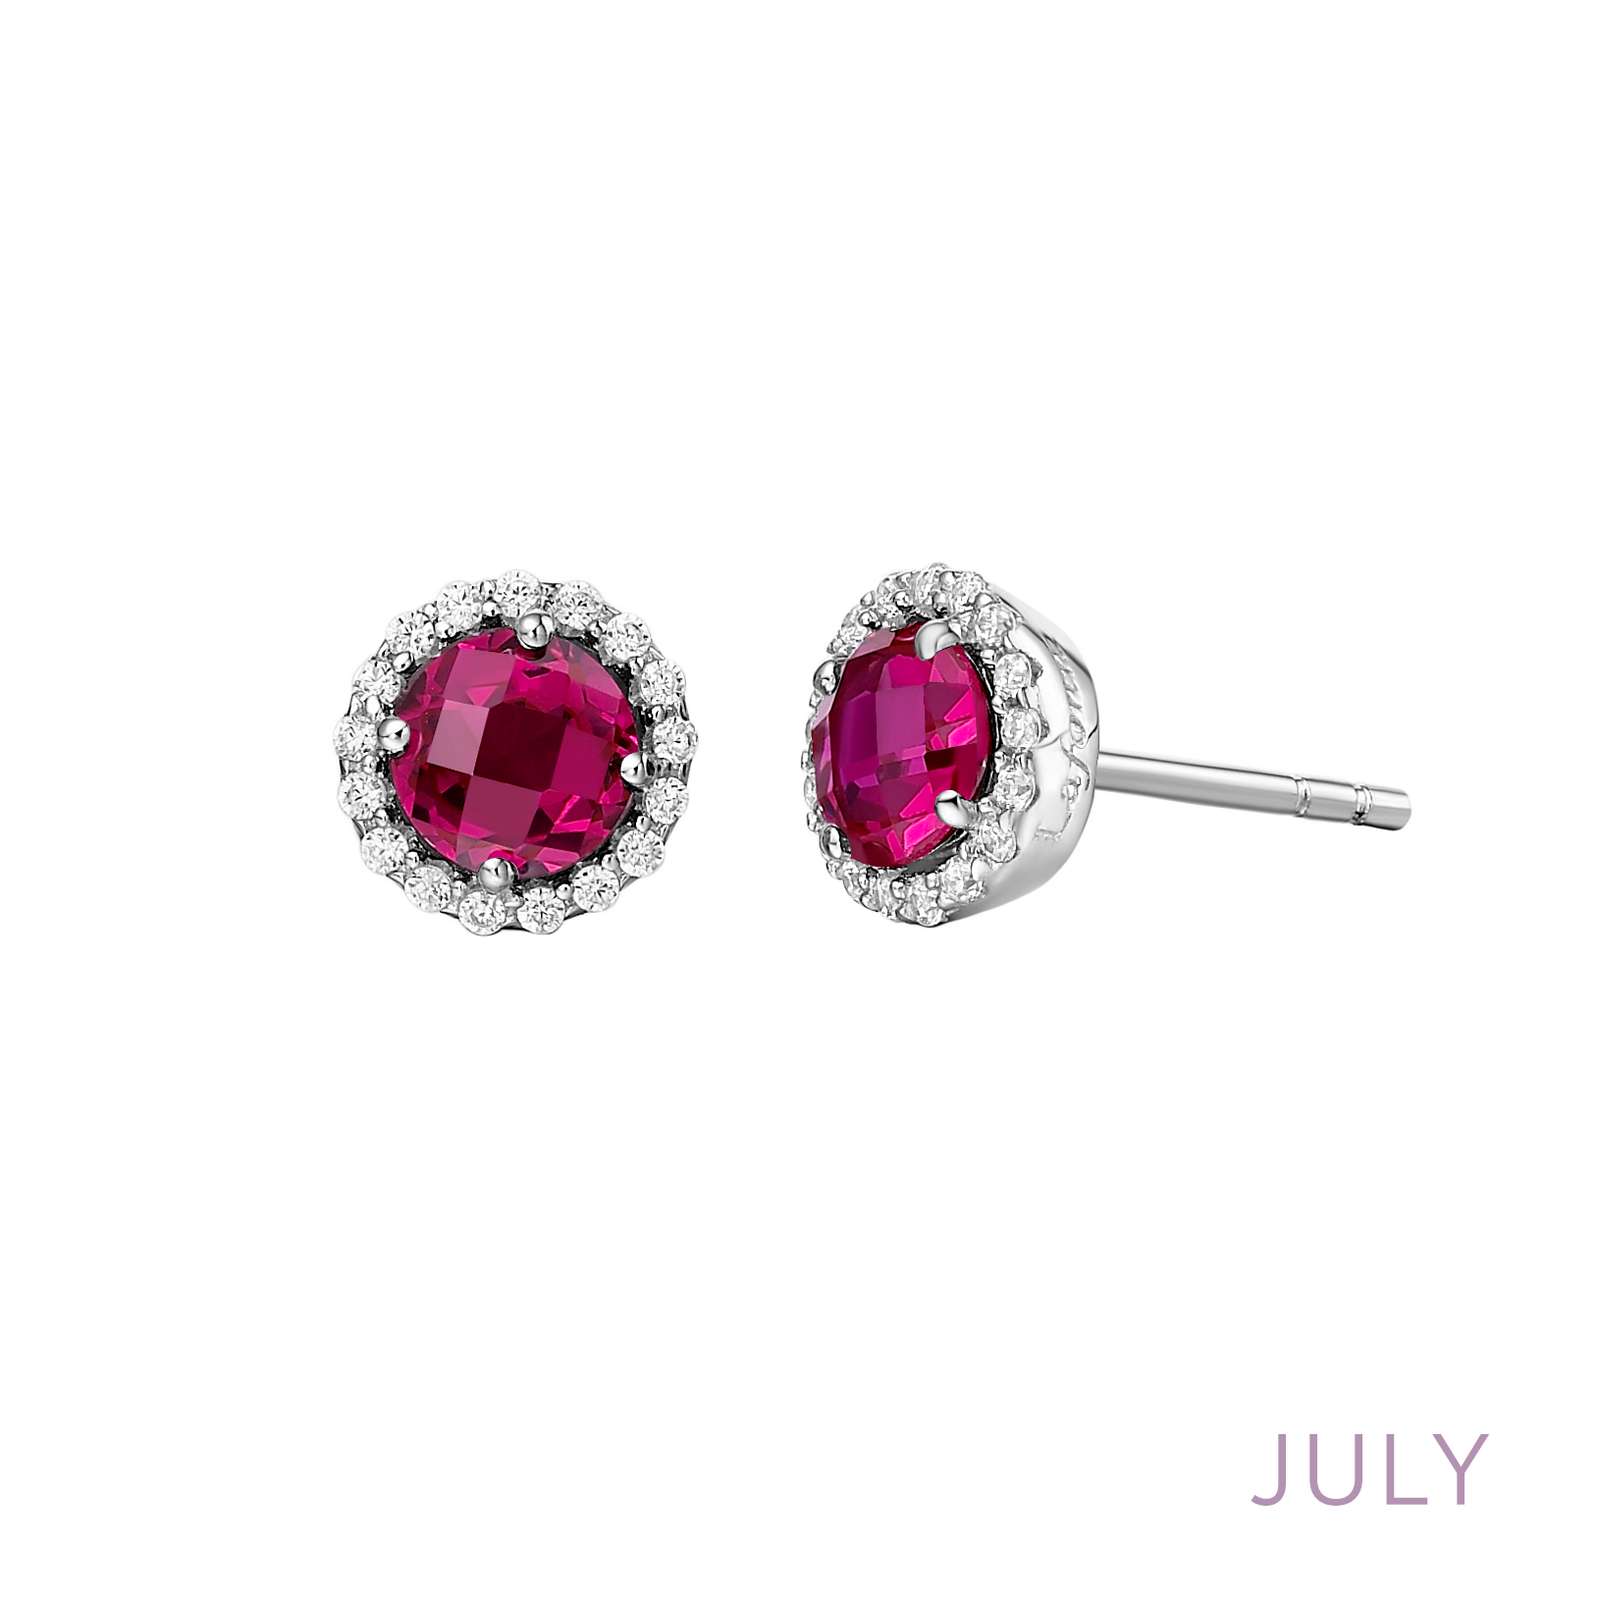 July Birthstone Earrings Griner Jewelry Co. Moultrie, GA